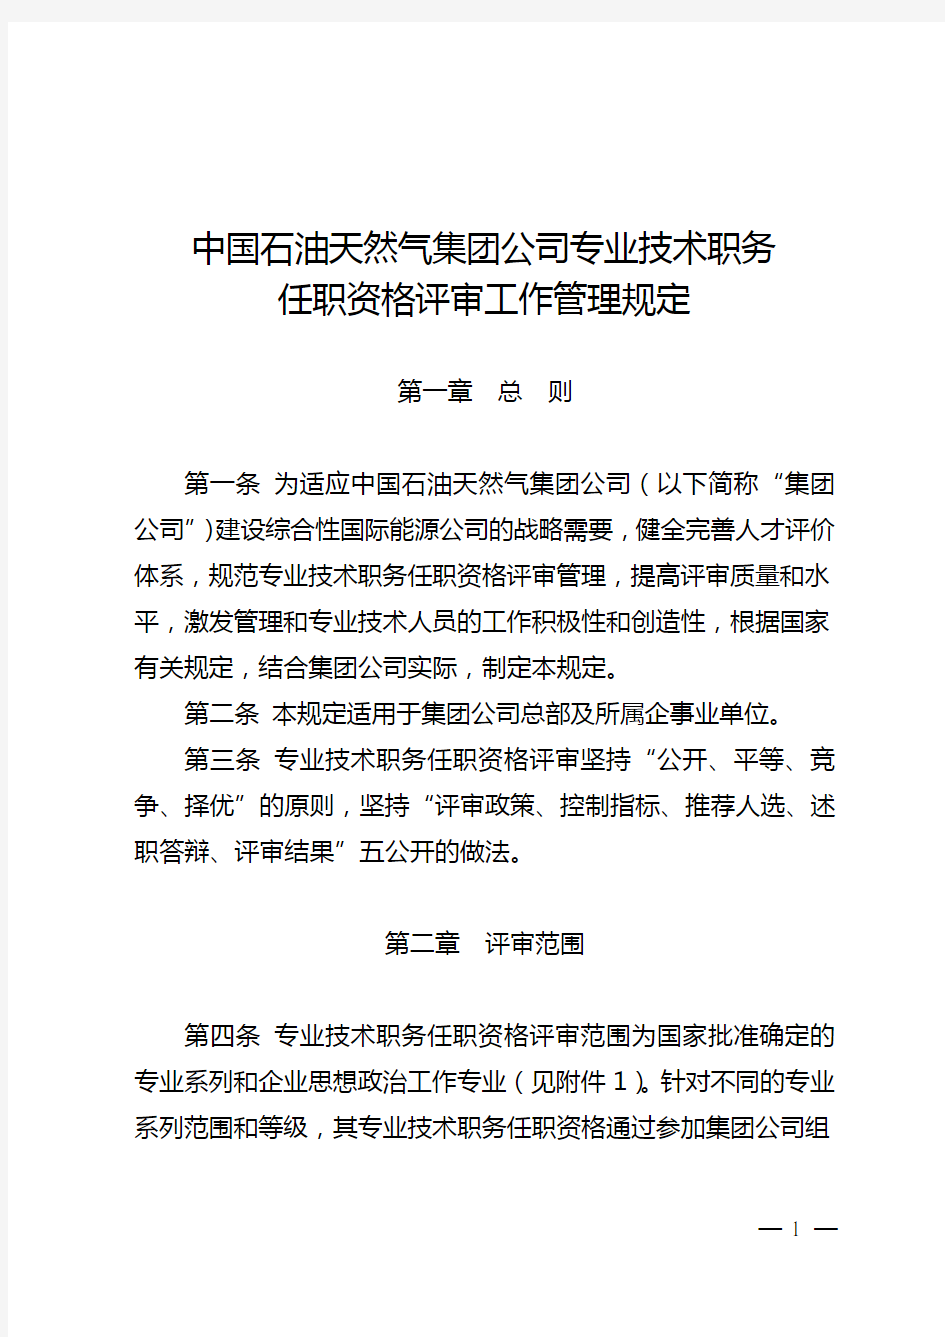 中国石油天然气集团公司专业技术职务任职资格评审工作管理规定